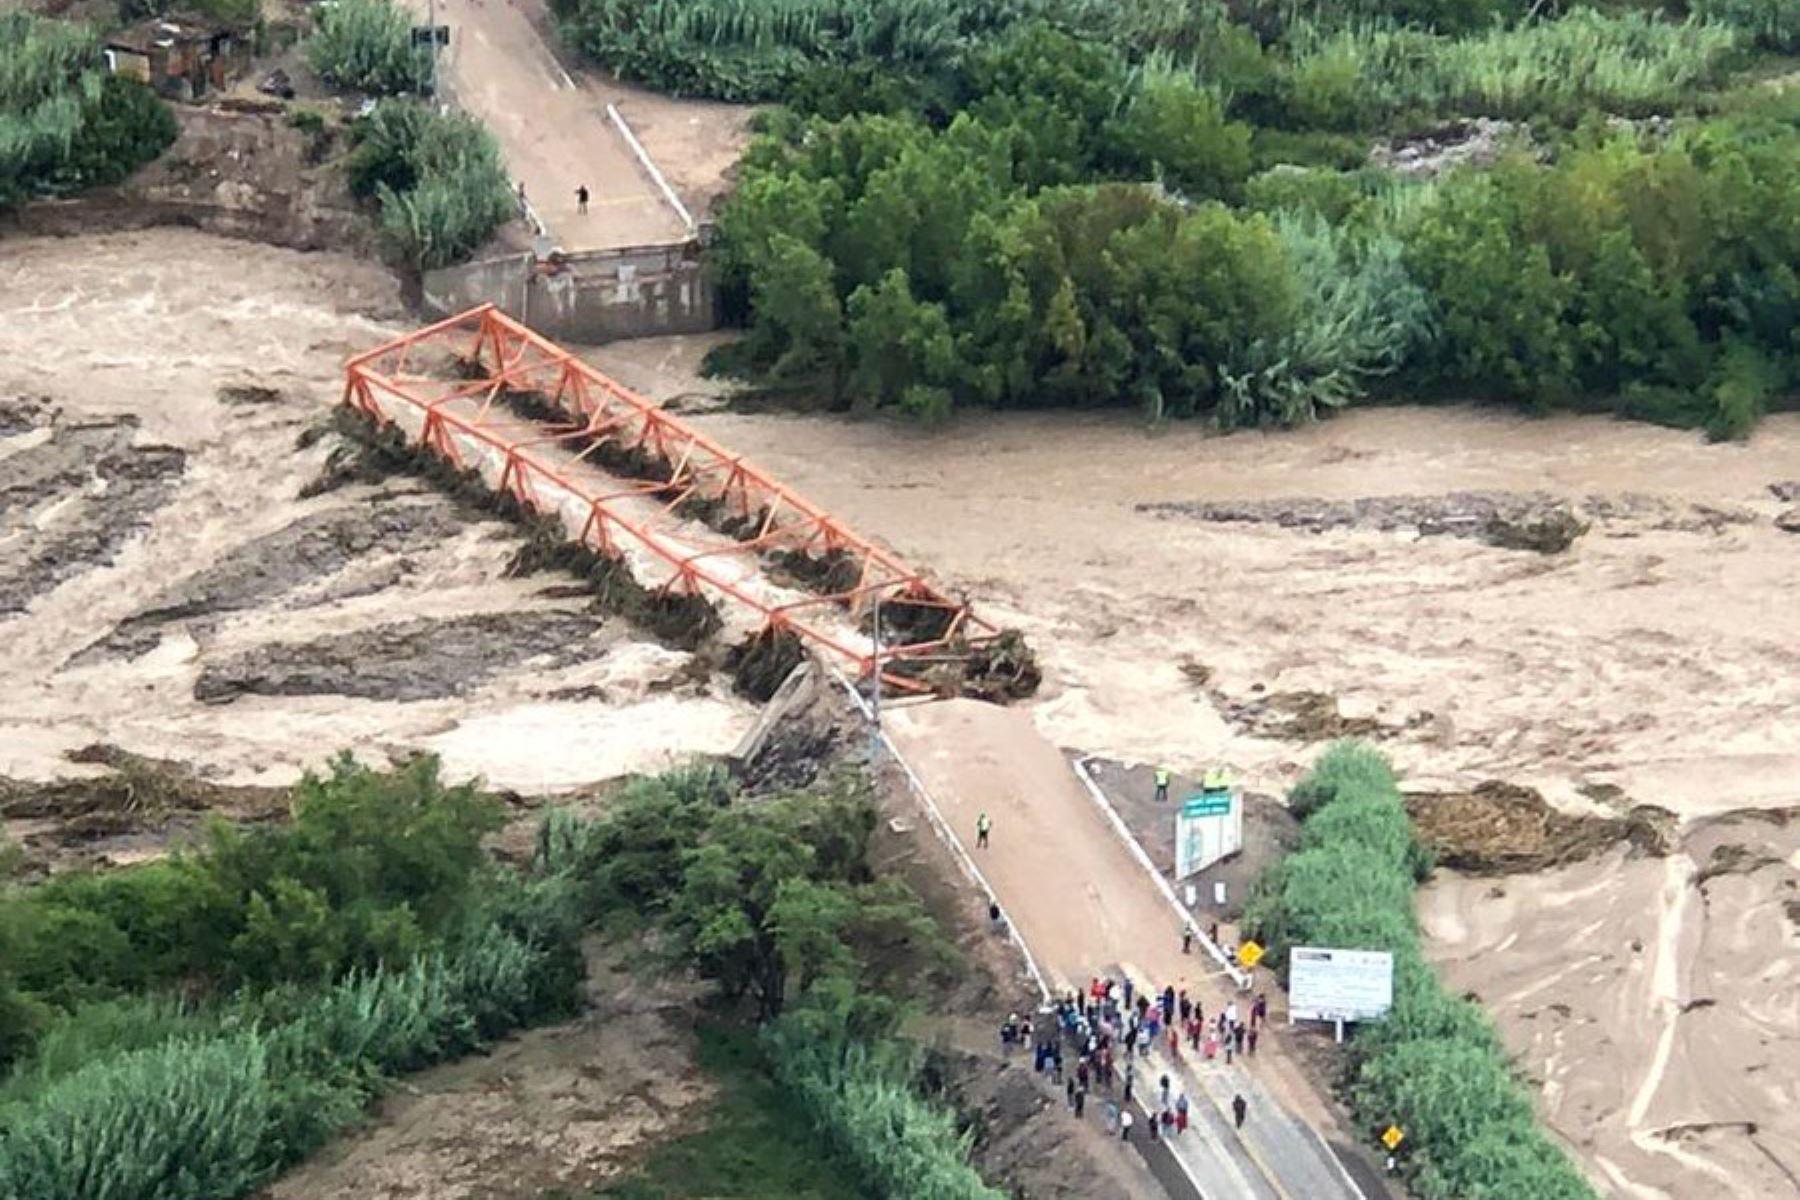 El Ministerio de Transportes y Comunicaciones (MTC) dispuso la instalación de un puente Bailey en reemplazo de puente Montalvo, ubicado en la provincia de Moquegua, que colapsó anoche debido a la fuerza de las aguas tras el incremento del caudal del río.